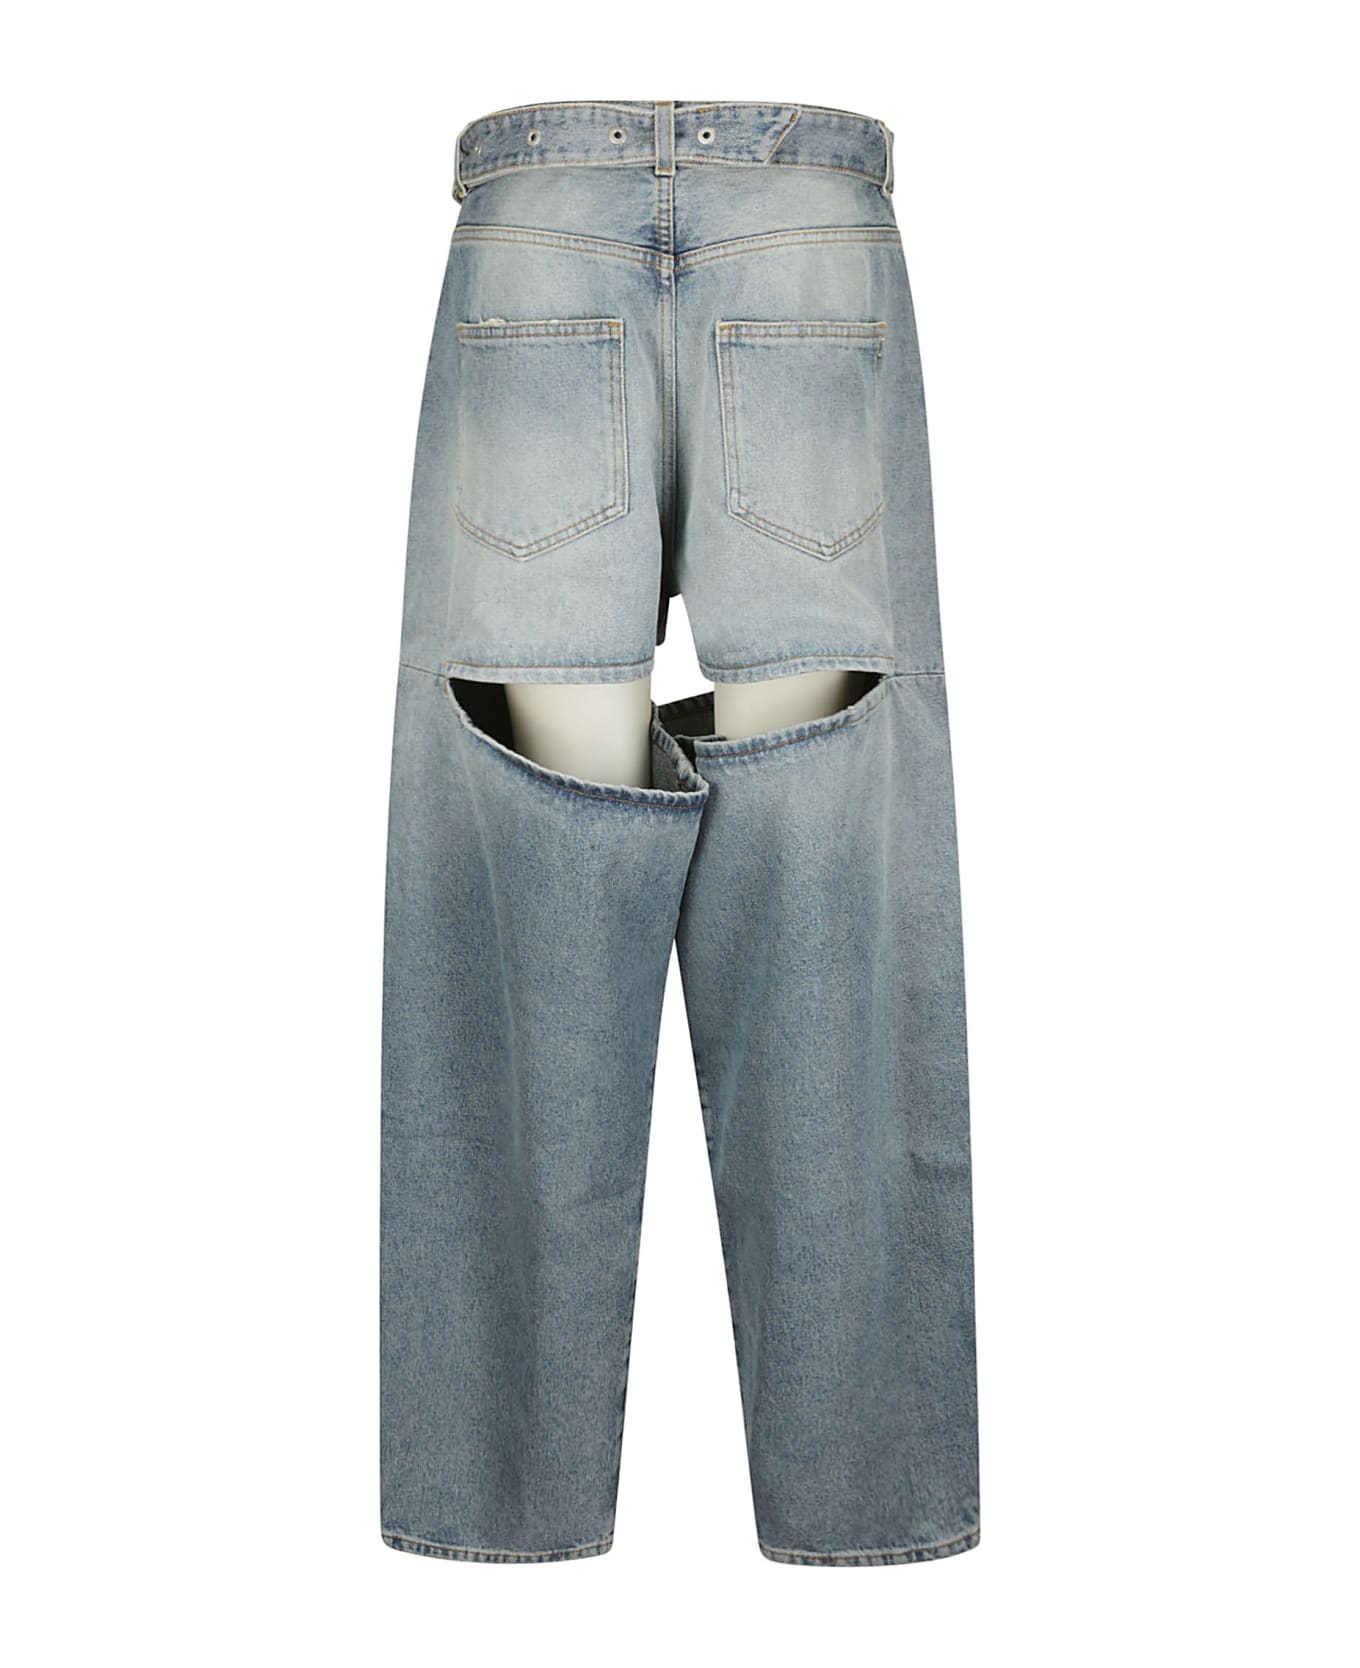 SSHEENA Jeans - BLUE VINTAGE デニム